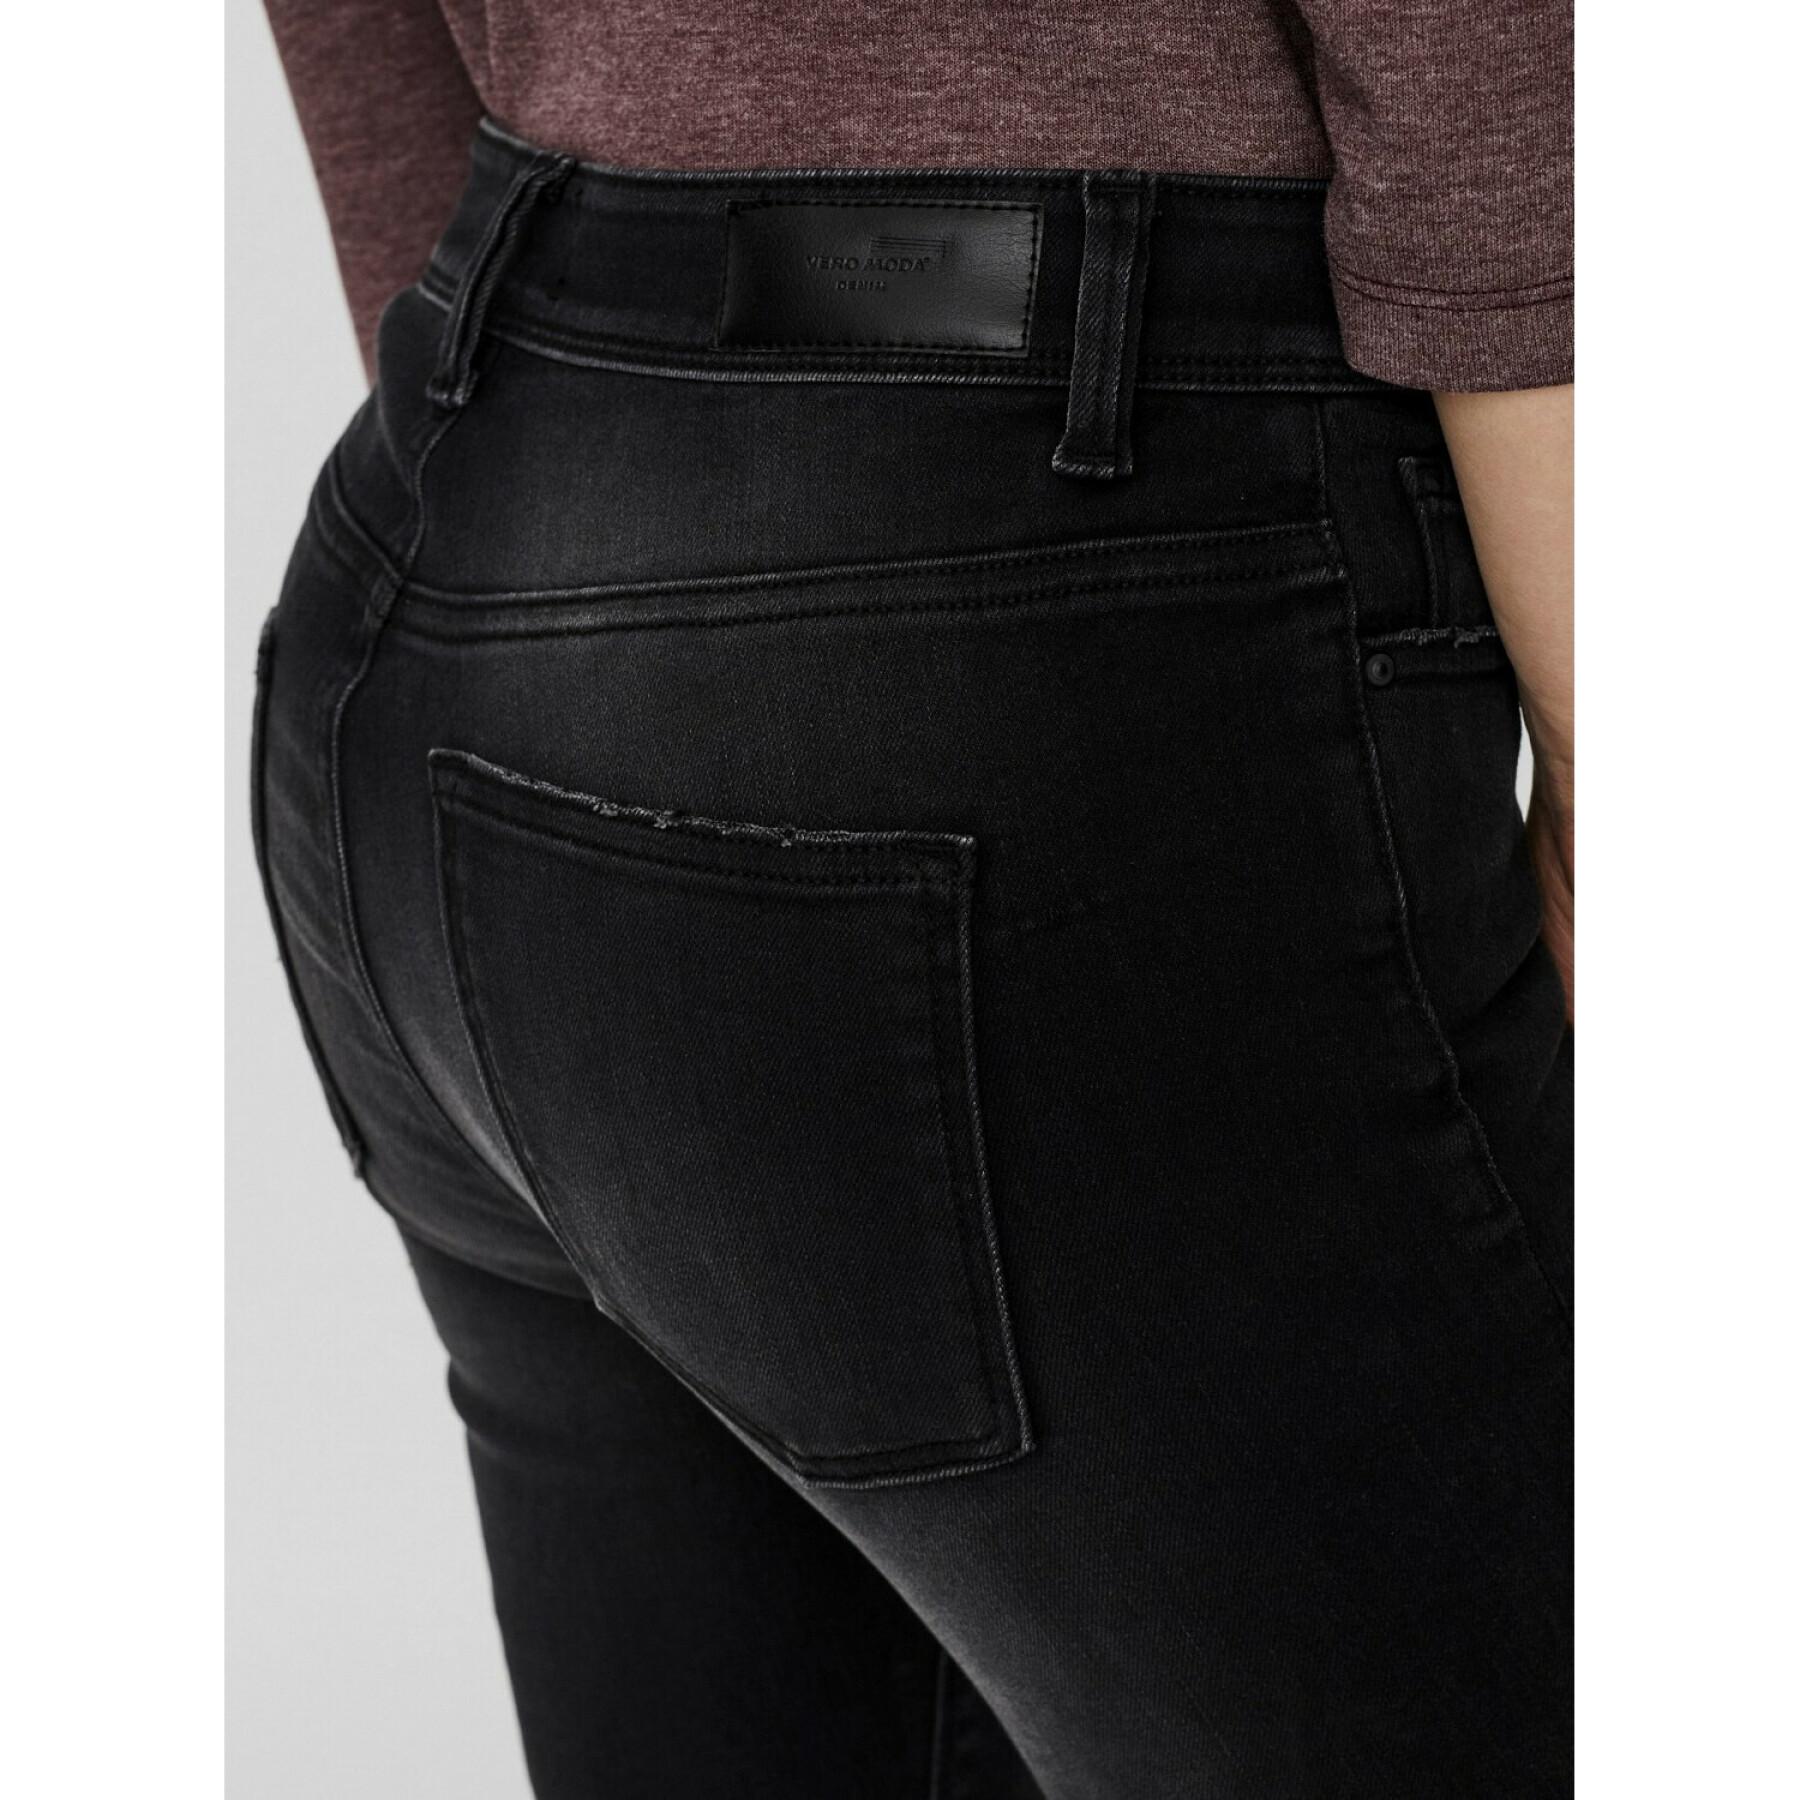 Damen-Skinny-Jeans Vero Moda vmpeach 1100